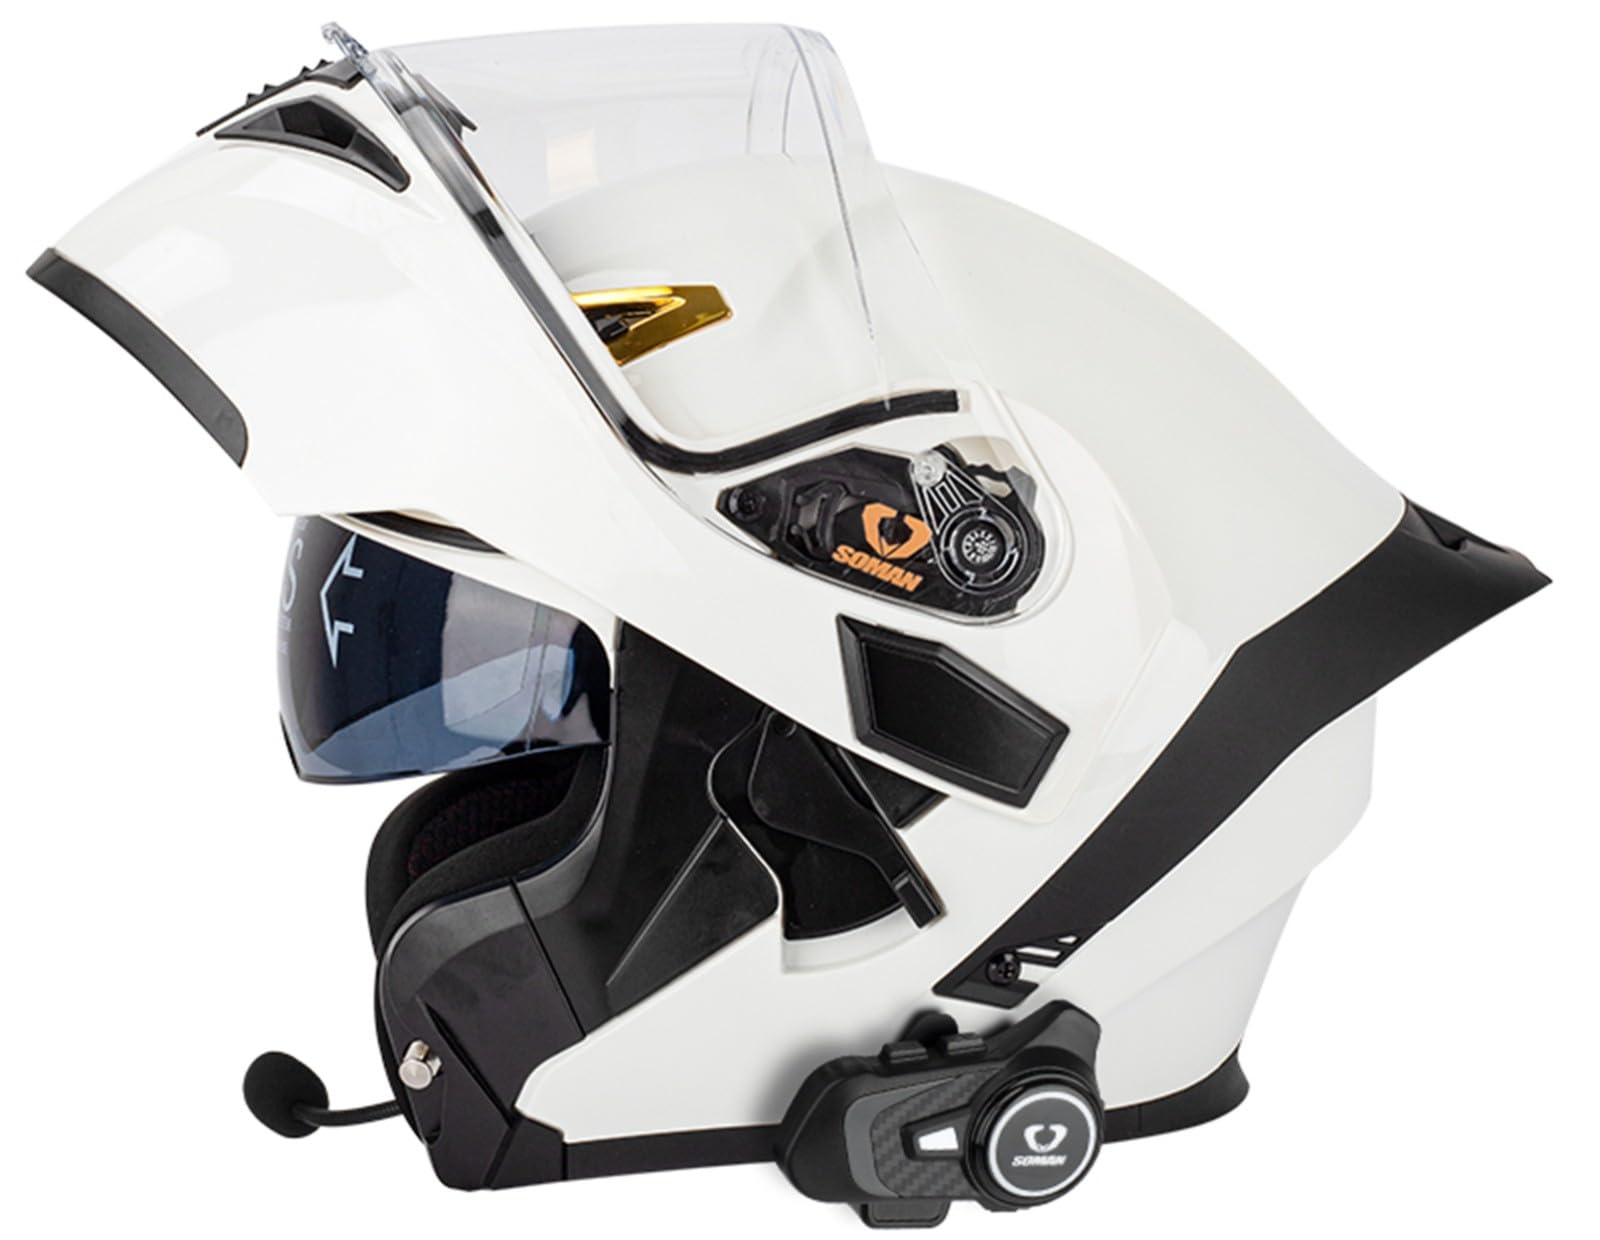 Bluetooth-Klapphelm Dual Sun Motorradhelme 3-Personen-Gegensprechanlage Bluetooth-Headset Für Männer Casco Para Motociclet ECE-Geprüftes Doppelvisier Antibeschlag Für Erwachsene N,XXL=24.80-25.19in